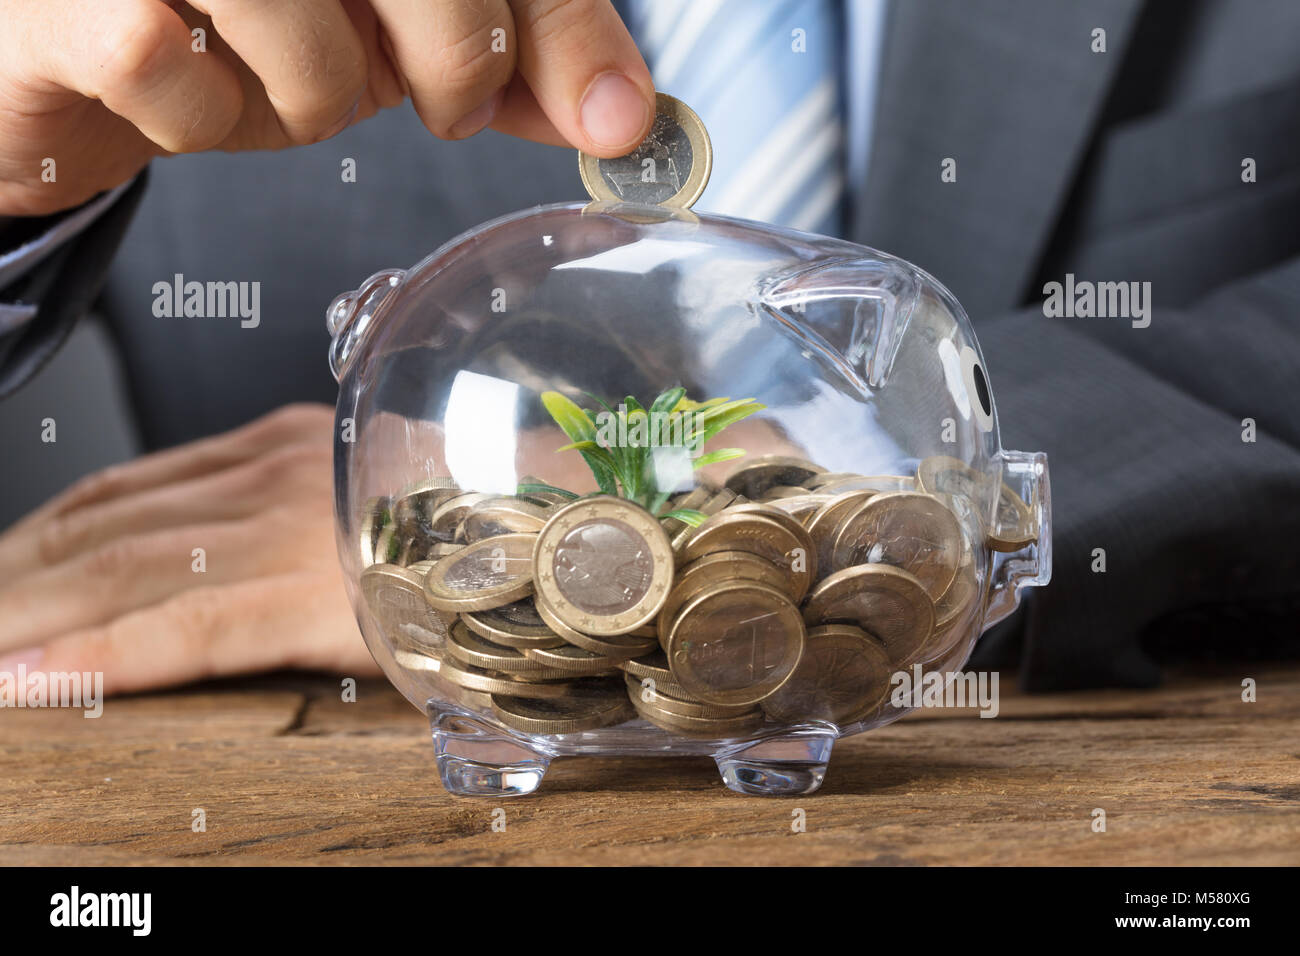 Closeup of businessman putting coin into transparent piggybank with plant Stock Photo